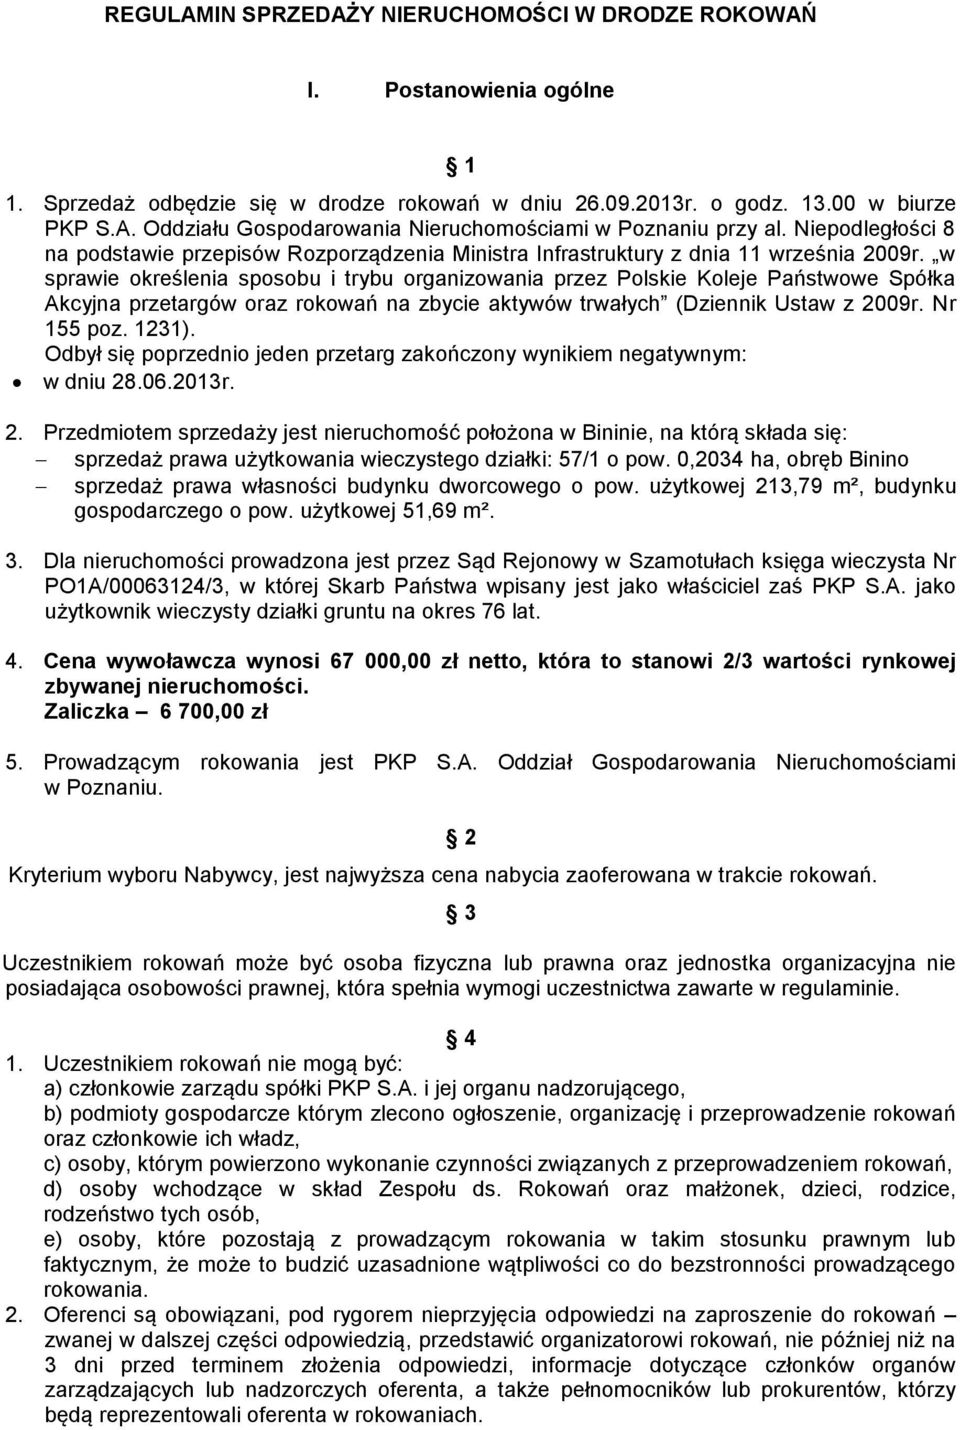 w sprawie określenia sposobu i trybu organizowania przez Polskie Koleje Państwowe Spółka Akcyjna przetargów oraz rokowań na zbycie aktywów trwałych (Dziennik Ustaw z 2009r. Nr 155 poz. 1231).